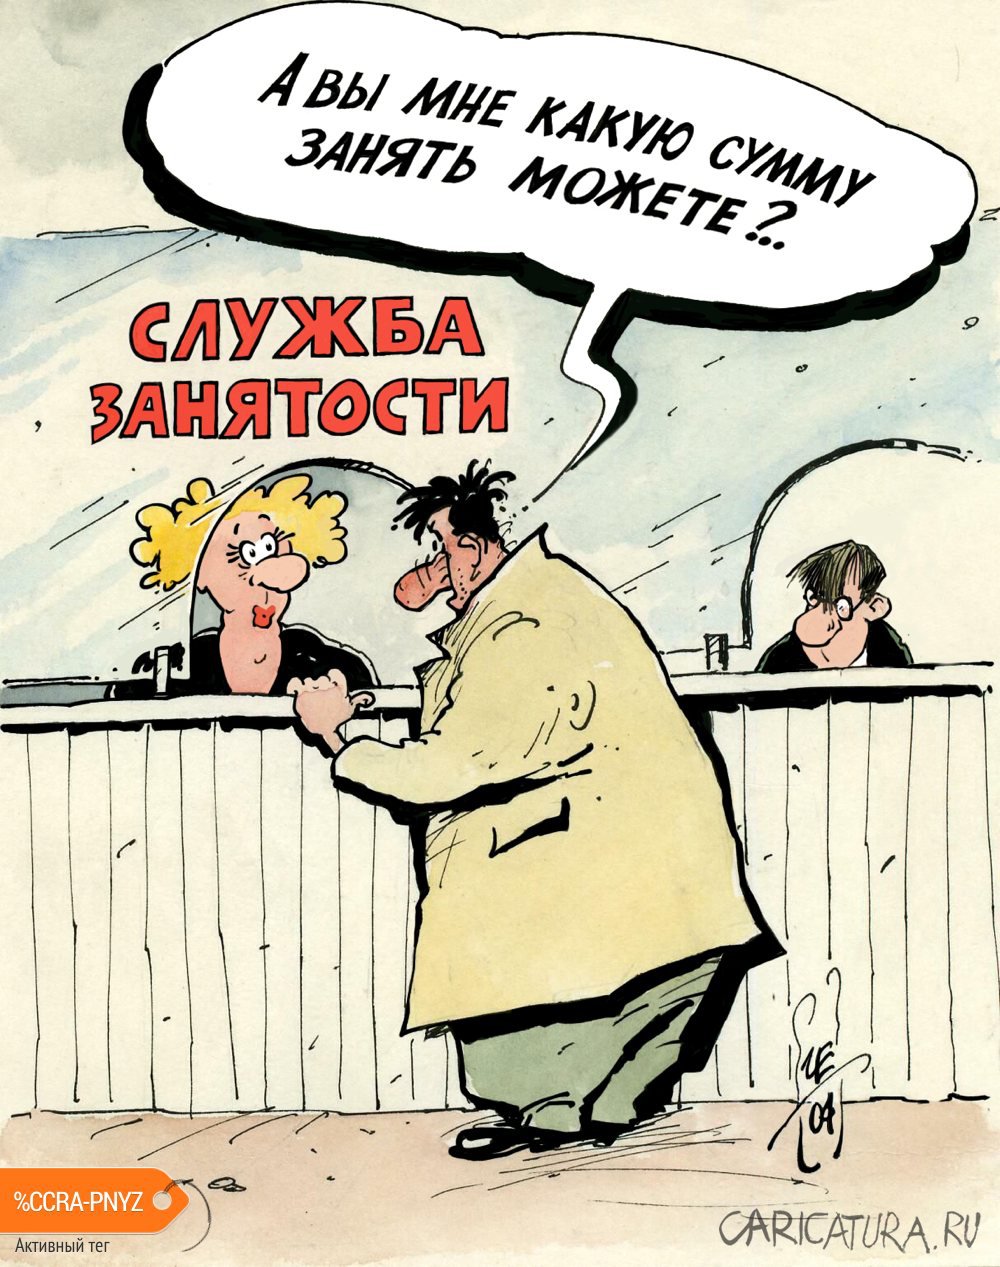 Карикатура "Служба занятости", Игорь Елистратов